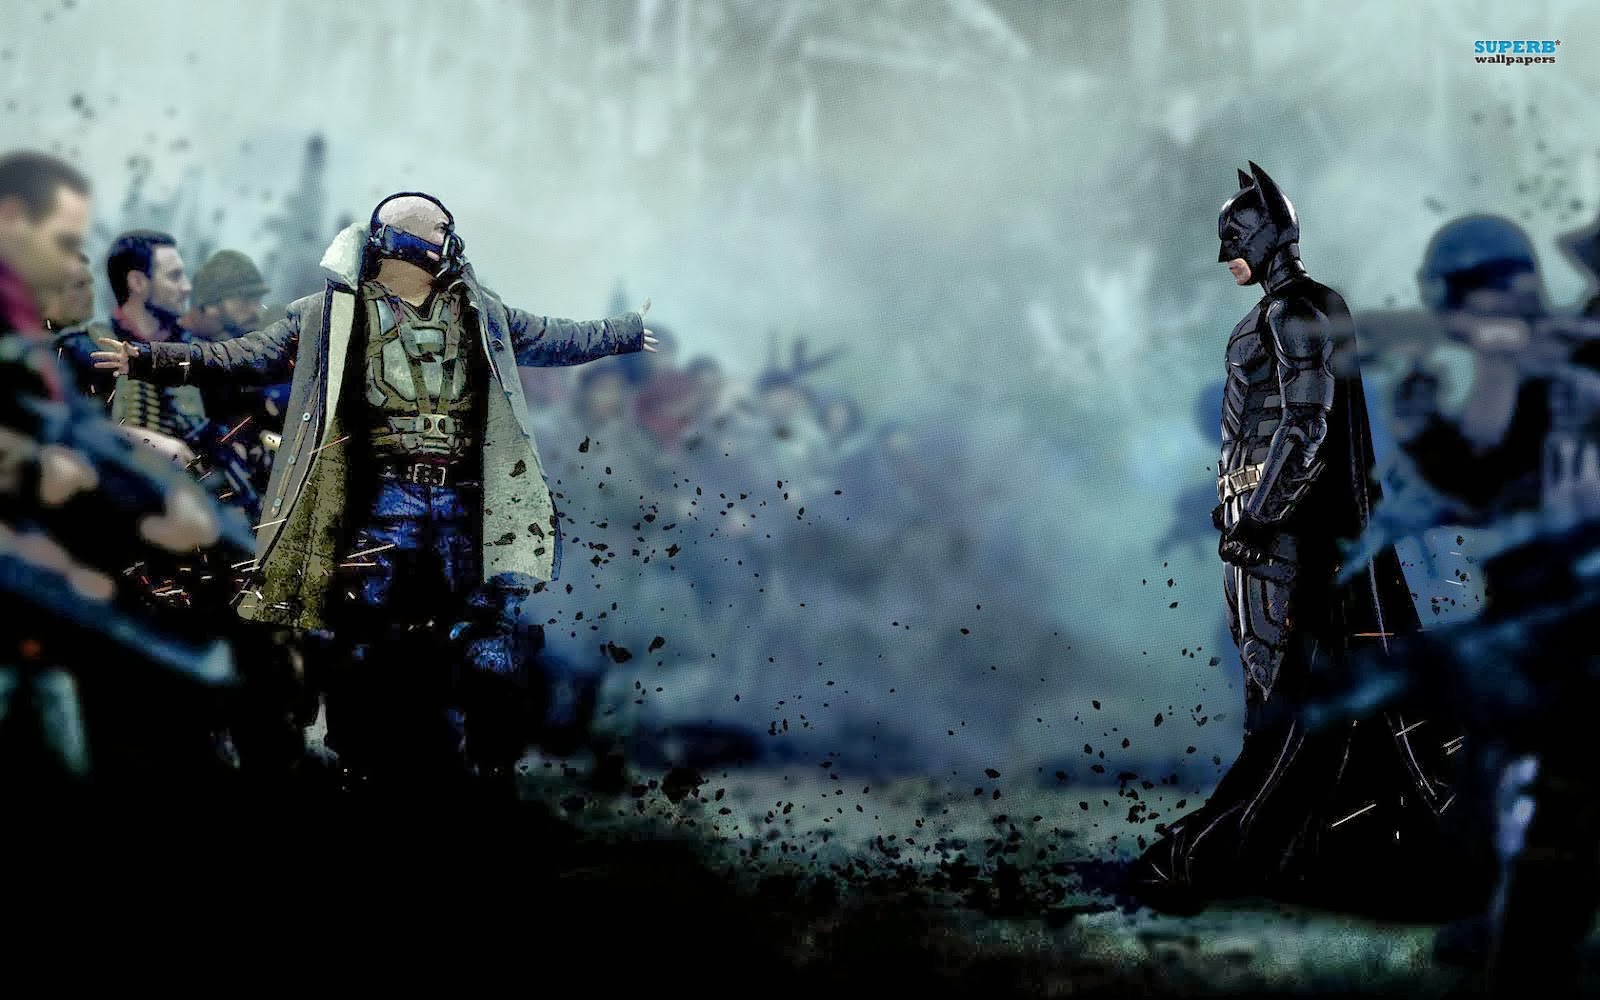 batman el caballero oscuro se levanta fondo de pantalla,juego de acción y aventura,cg artwork,figura de acción,captura de pantalla,personaje de ficción